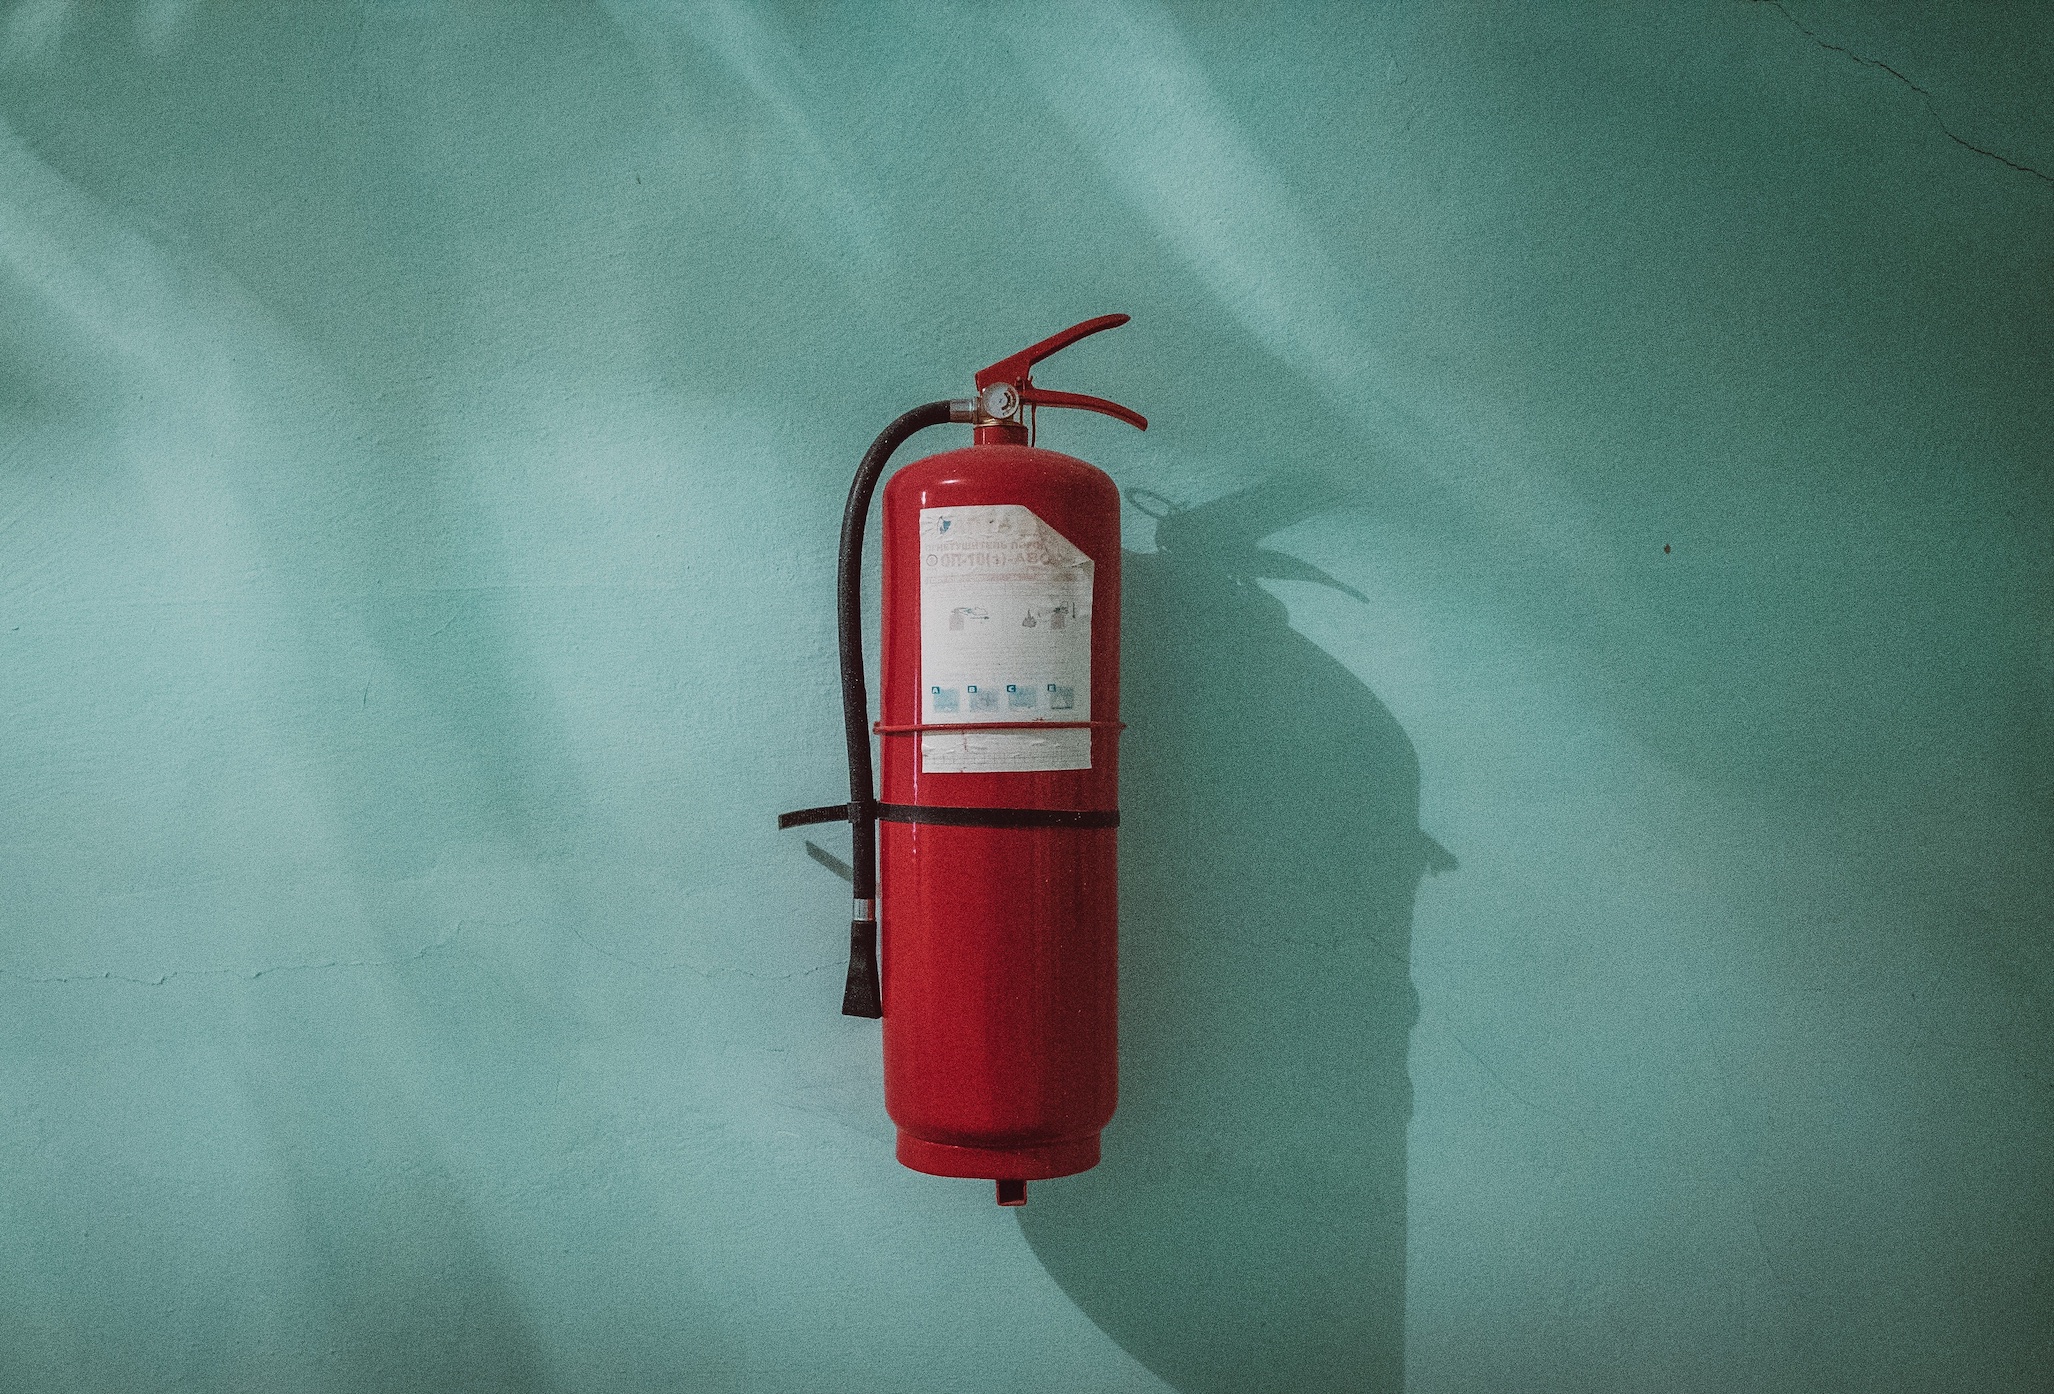 Fire extinguisher; image by Piotr Chrobot, via Unsplash.com.